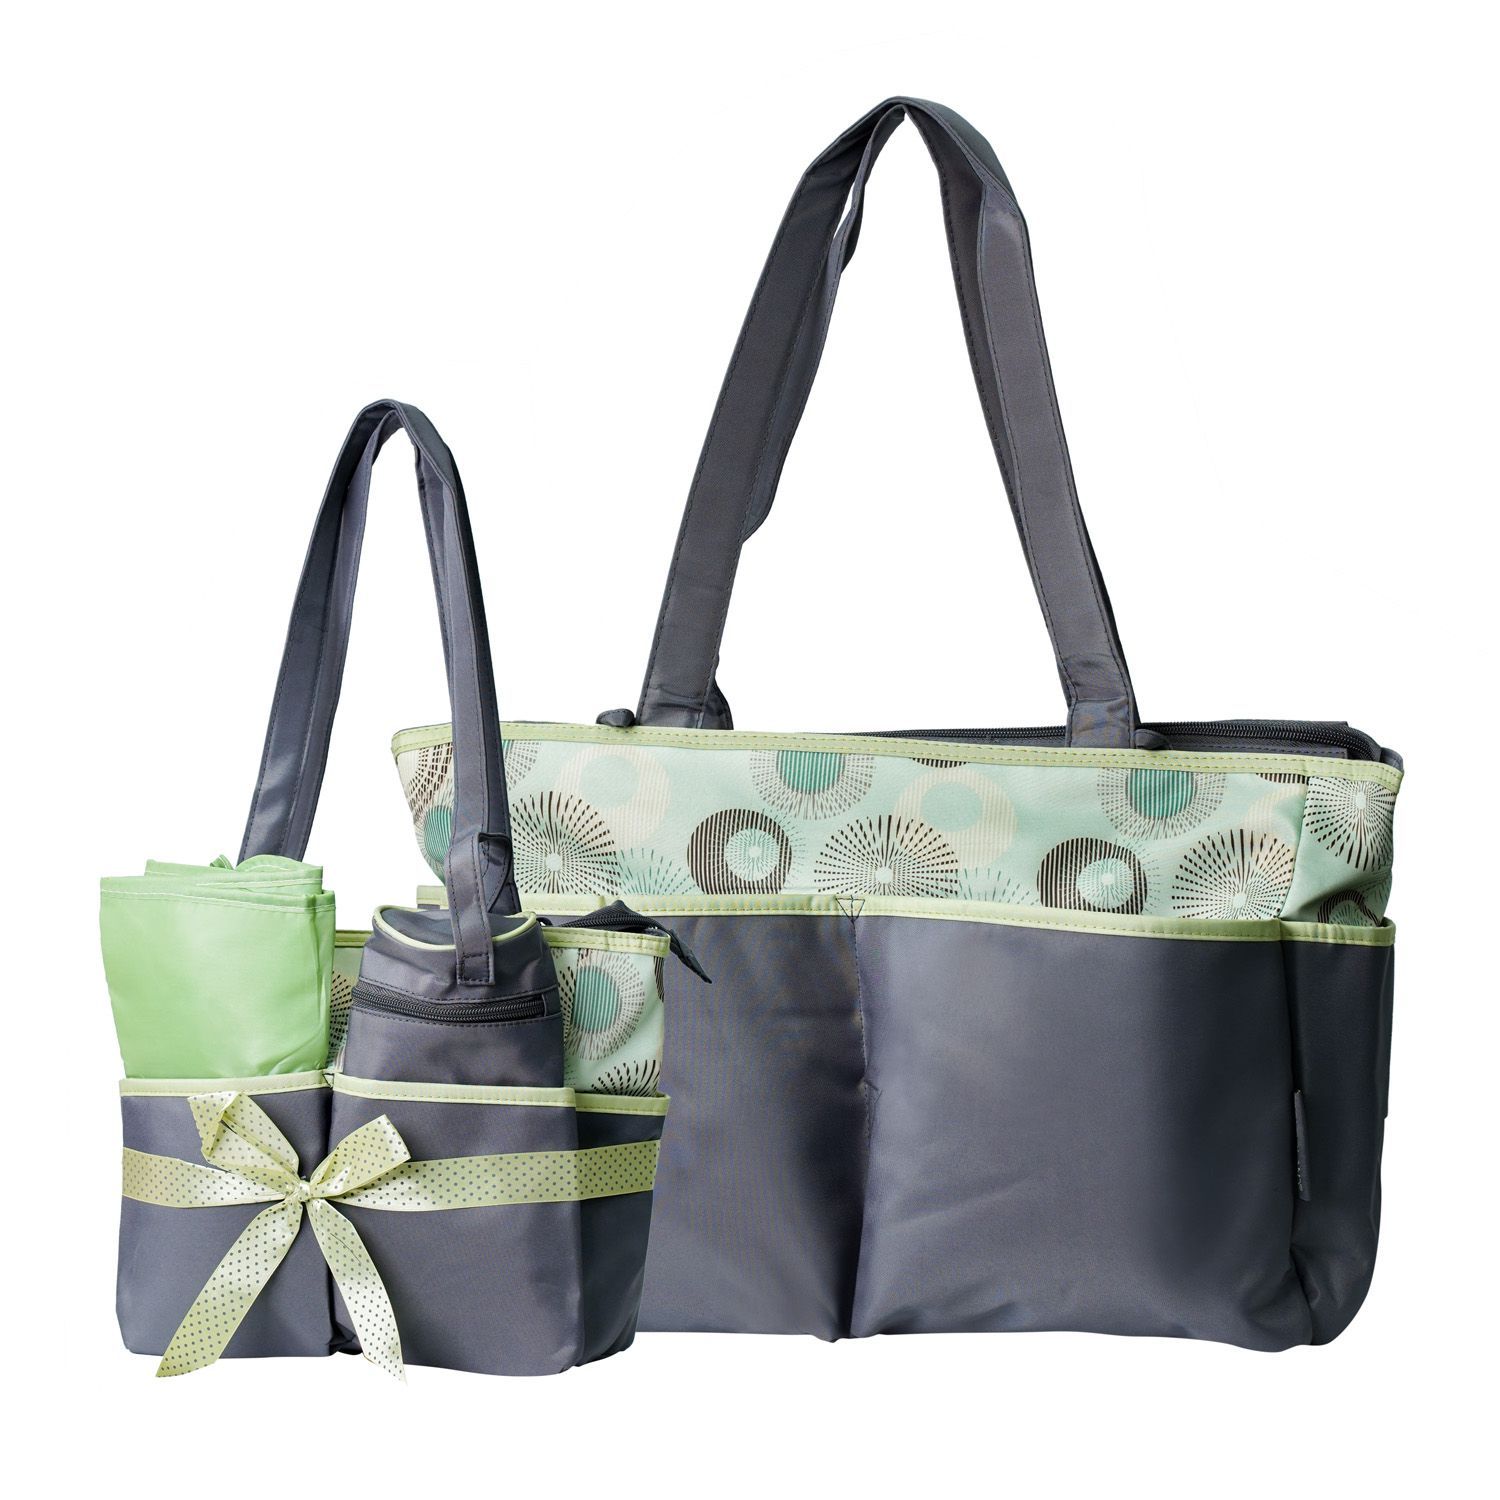 Color land  MOTHER BAG SET 4 pec baby bag set baby nappy bag